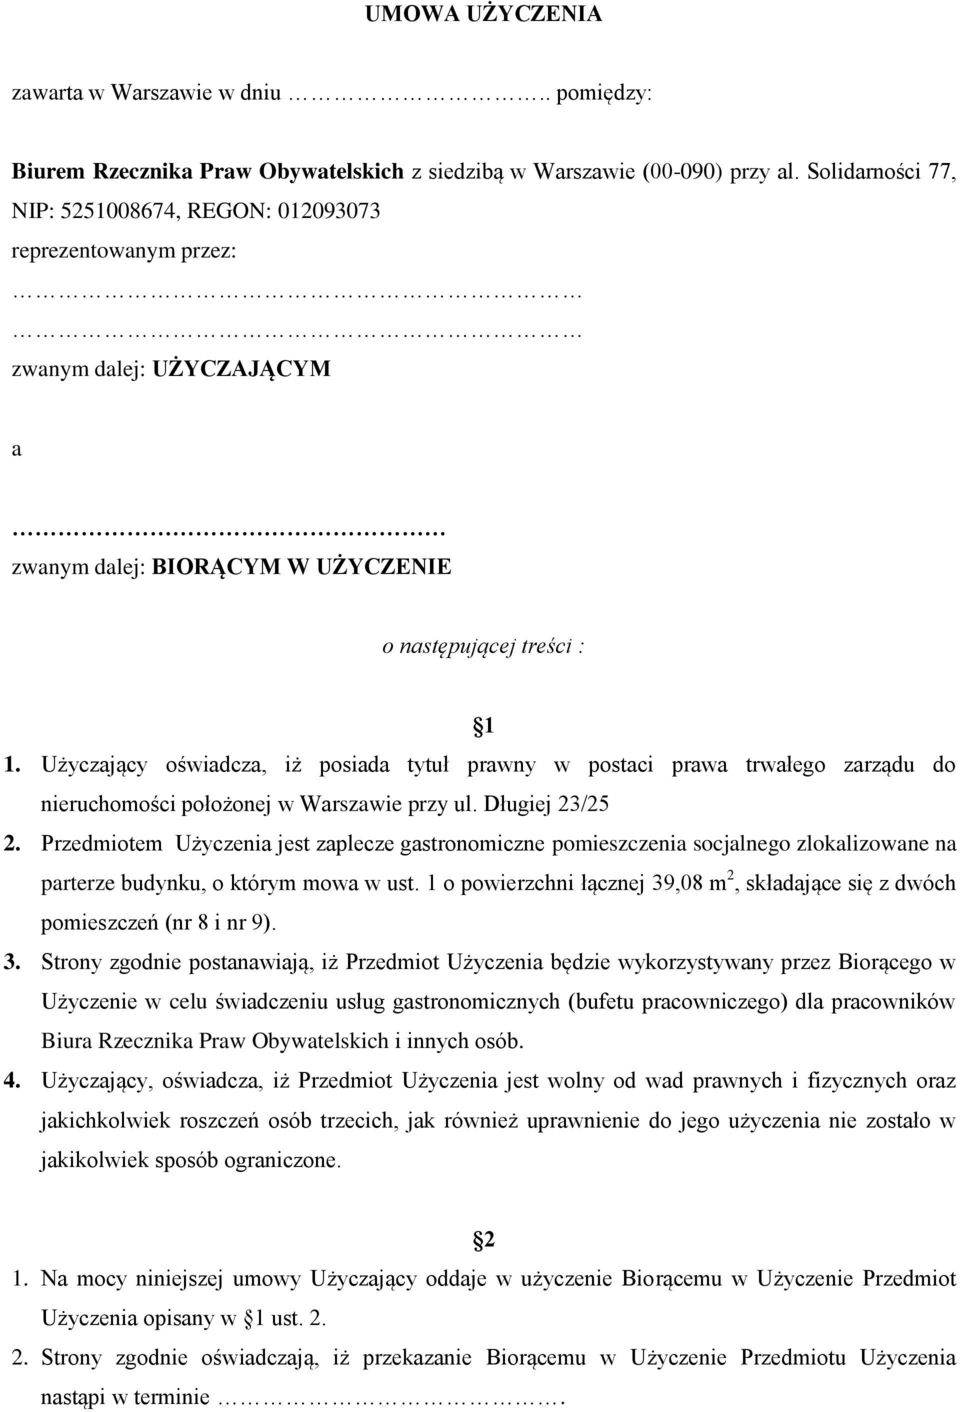 Użyczający oświadcza, iż posiada tytuł prawny w postaci prawa trwałego zarządu do nieruchomości położonej w Warszawie przy ul. Długiej 23/25 2.